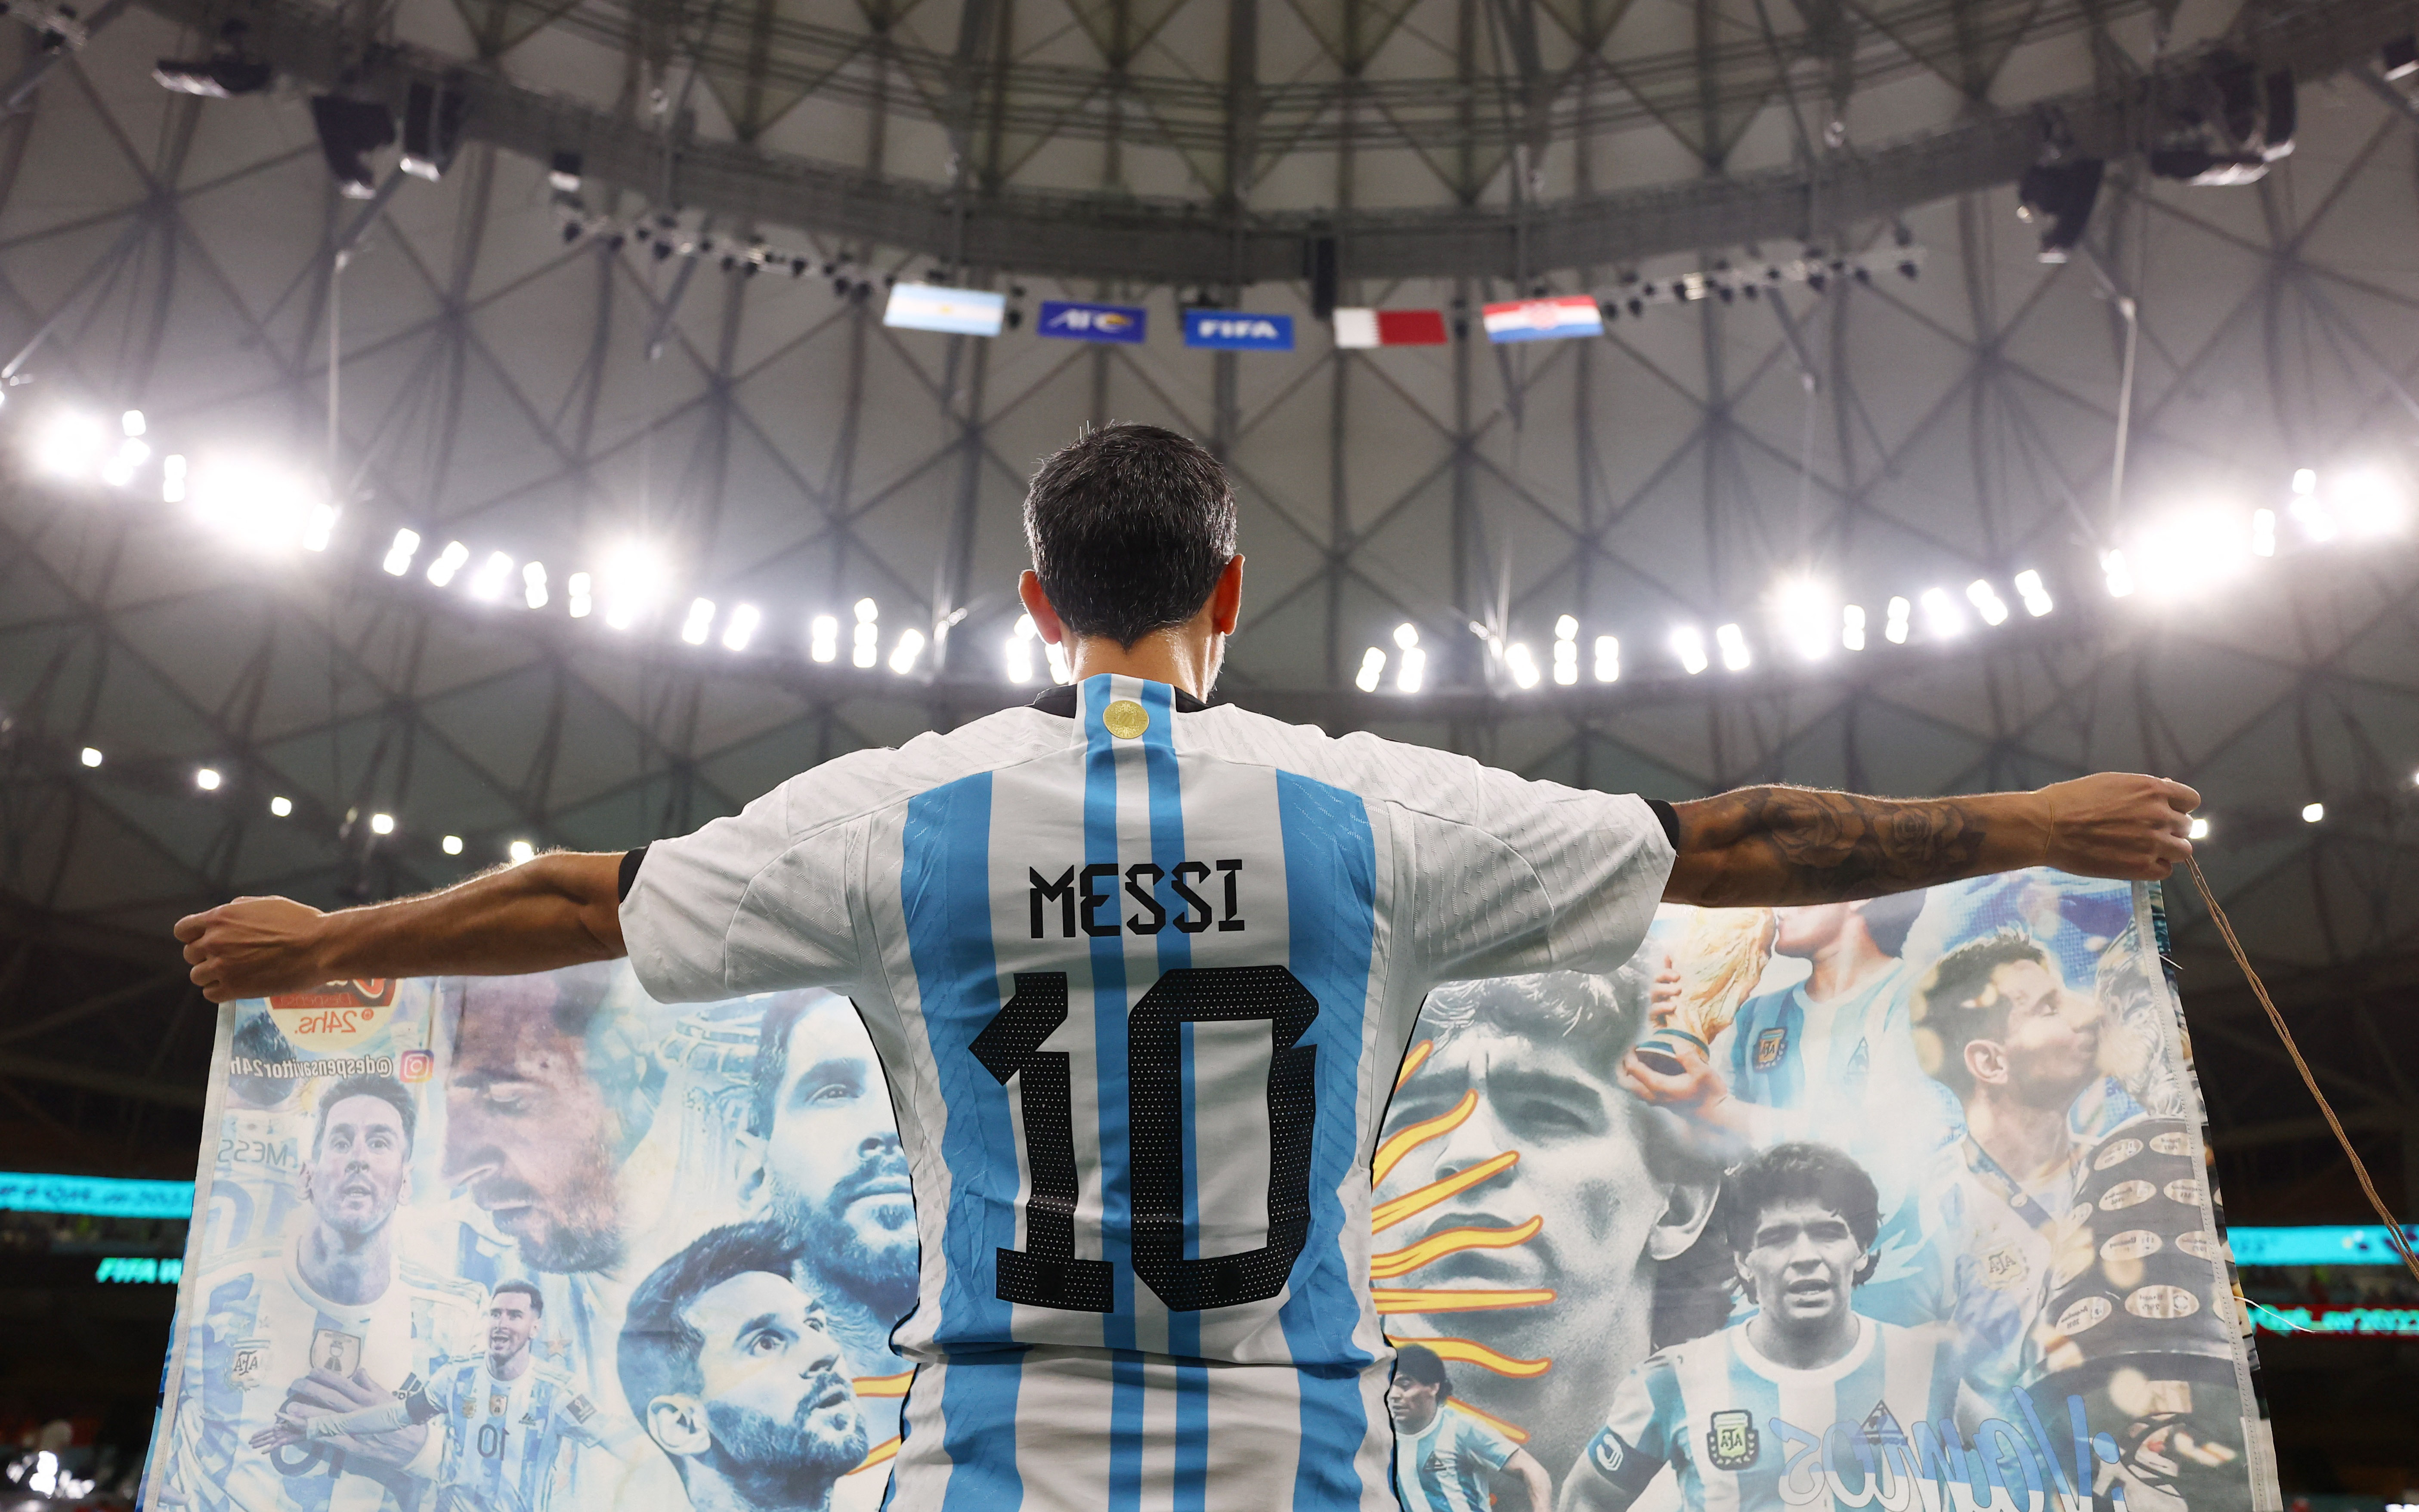 Un fanático con la camiseta de Messi y la bandera con Maradona como protagonista (REUTERS/Lee Smith)